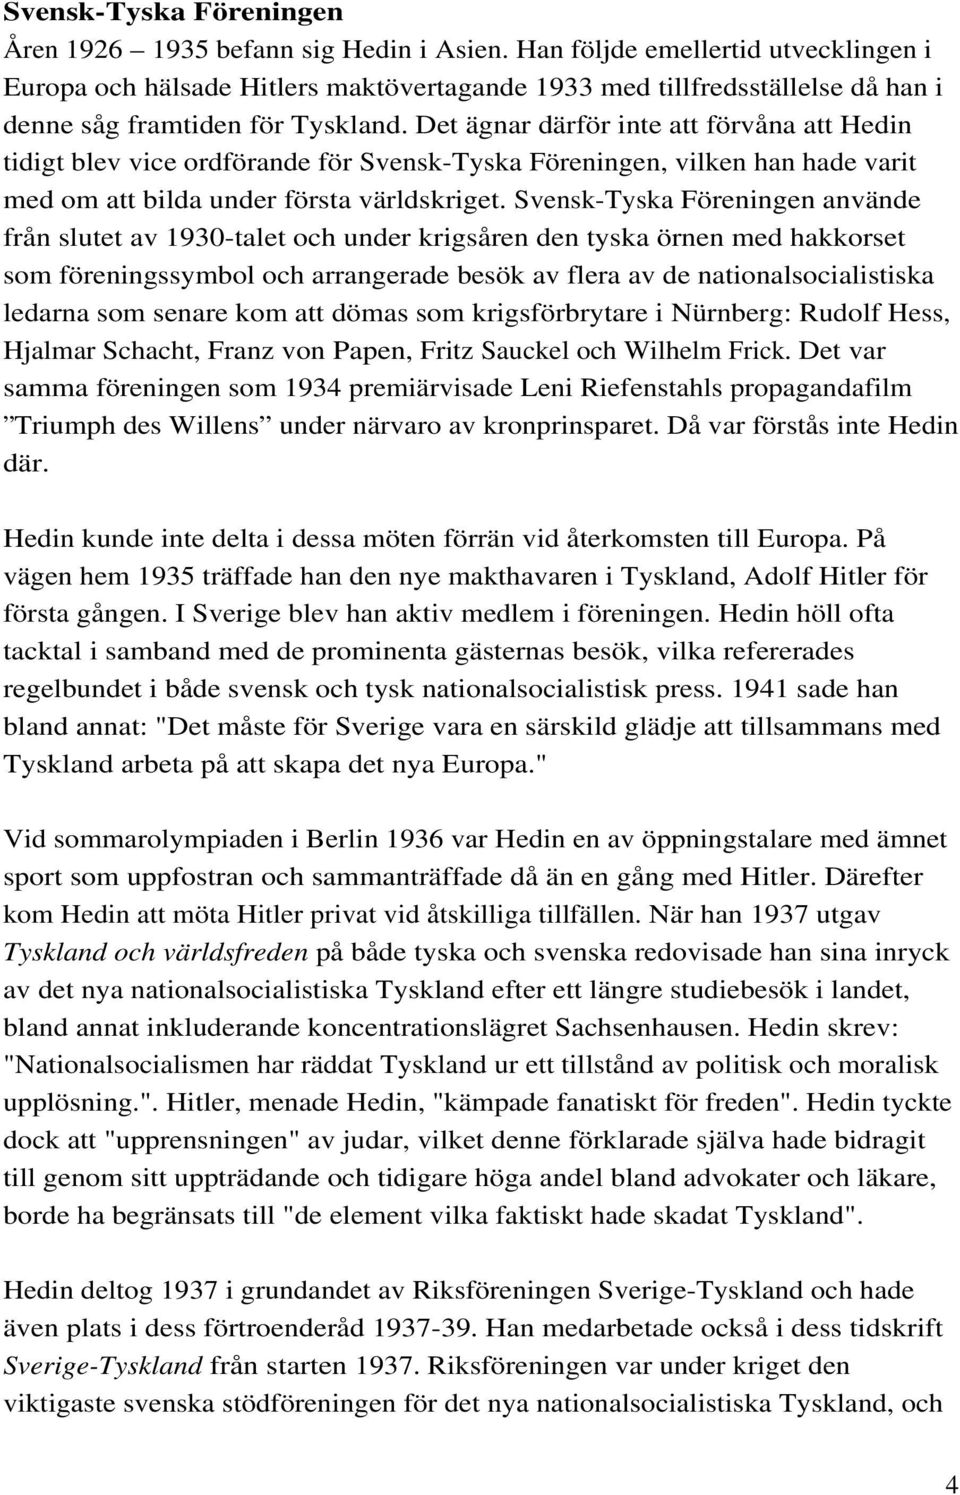 Det ägnar därför inte att förvåna att Hedin tidigt blev vice ordförande för Svensk-Tyska Föreningen, vilken han hade varit med om att bilda under första världskriget.